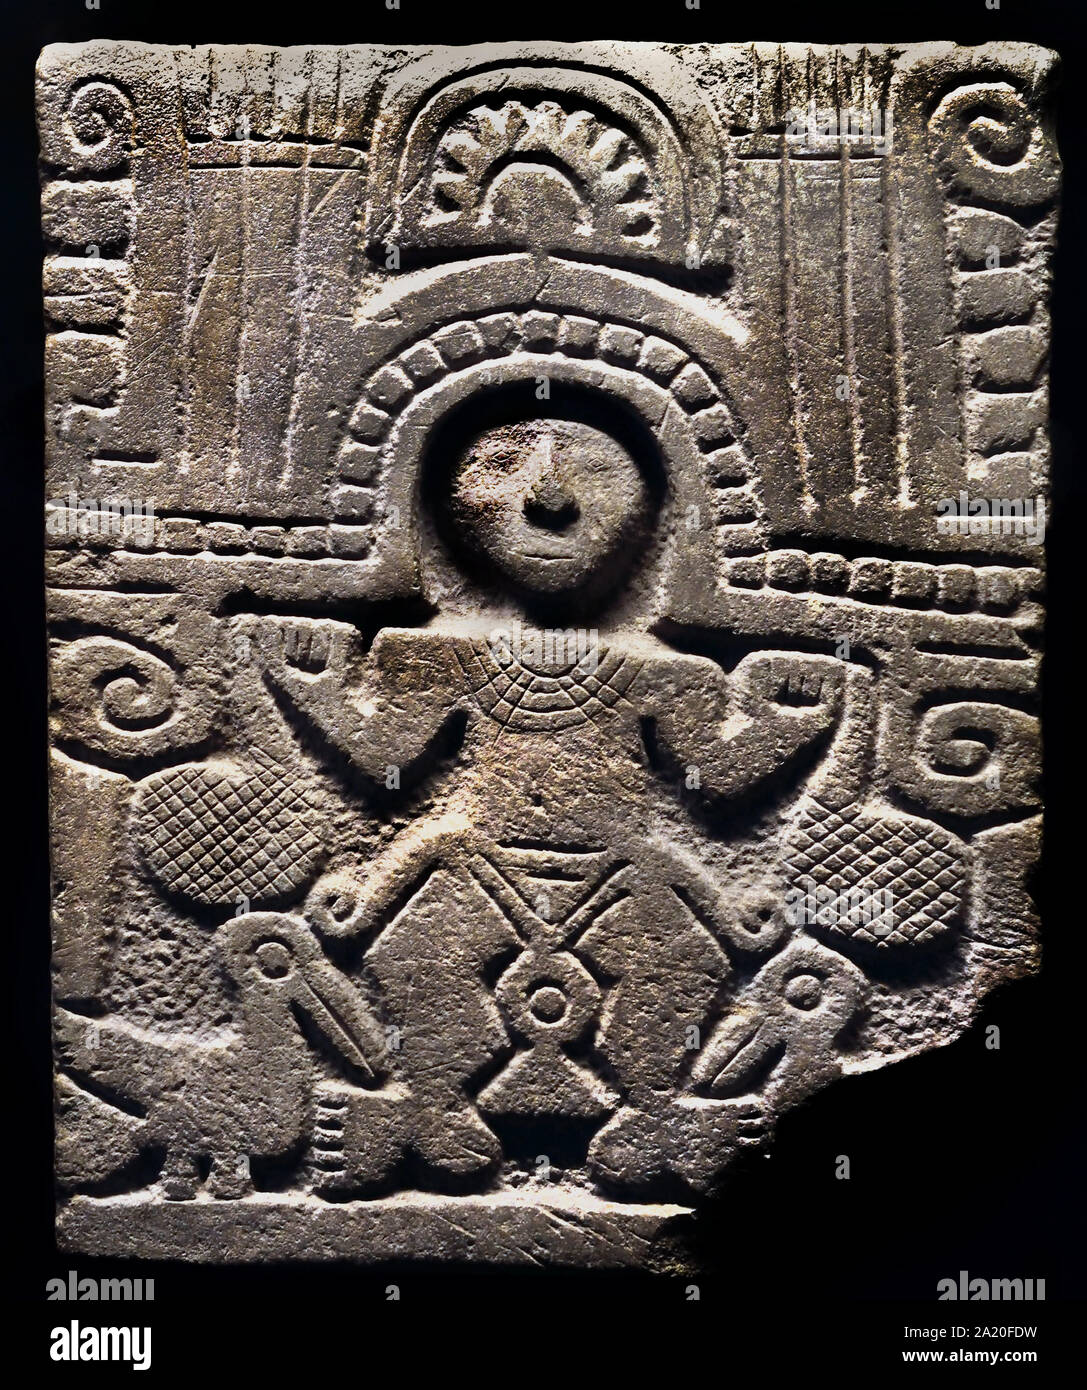 Stèle représentant un personnage (800-1532) Huancavilca Culture Manteno de Manabi, Équateur - Amérique du Nord - Amérique du Sud, cuisine américaine. Banque D'Images